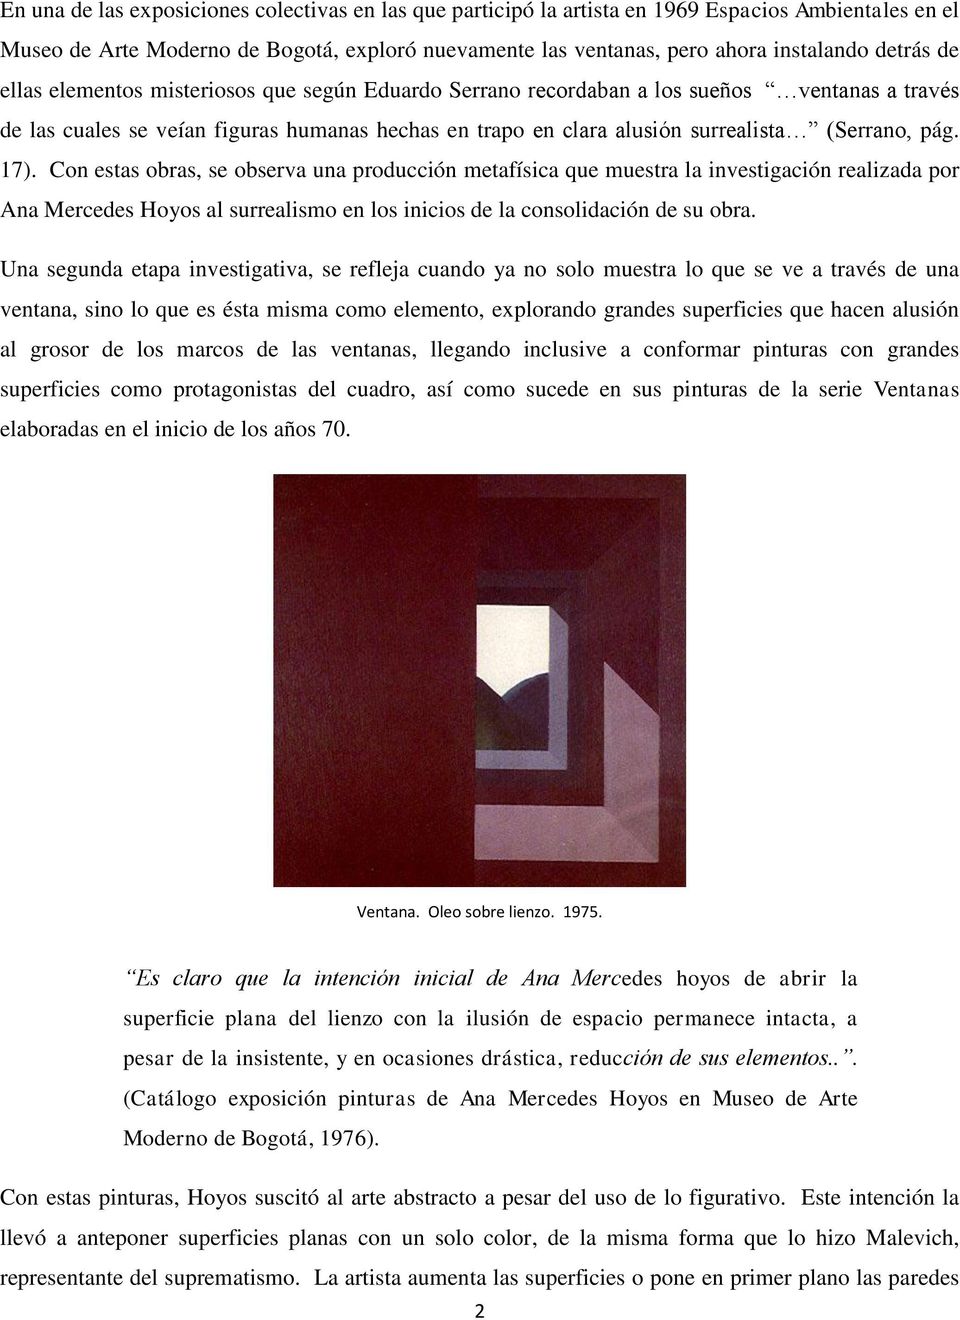 17). Con estas obras, se observa una producción metafísica que muestra la investigación realizada por Ana Mercedes Hoyos al surrealismo en los inicios de la consolidación de su obra.